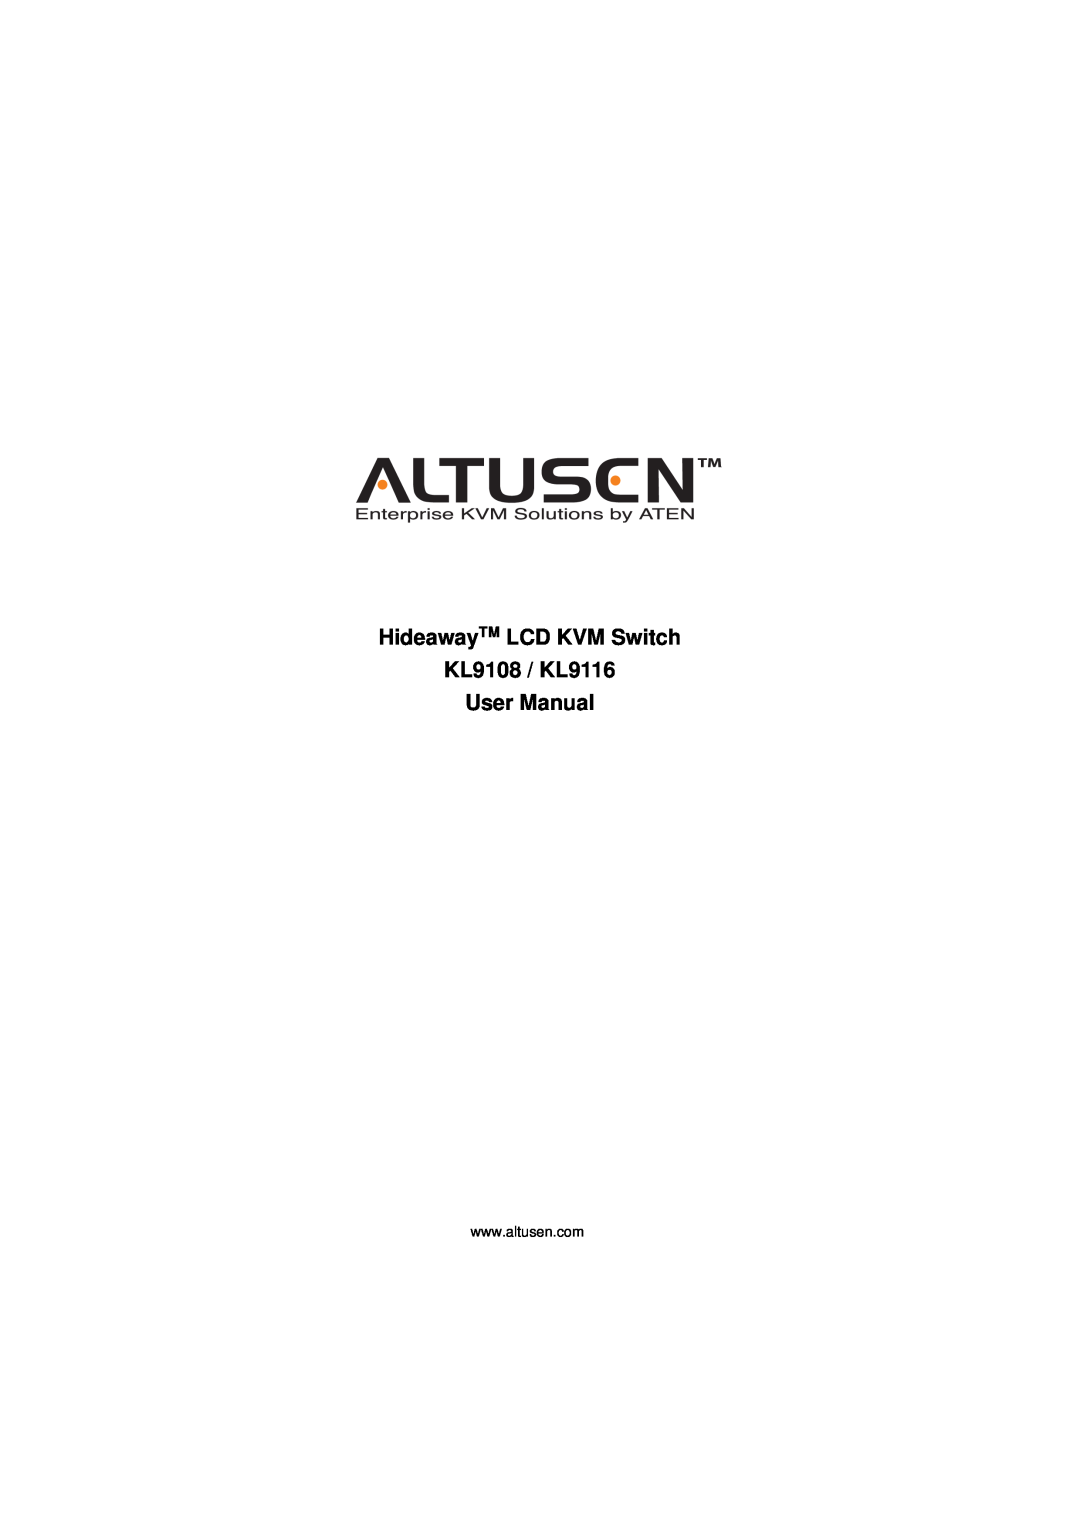 ATEN Technology user manual HideawayTM LCD KVM Switch, KL9108 / KL9116 User Manual 